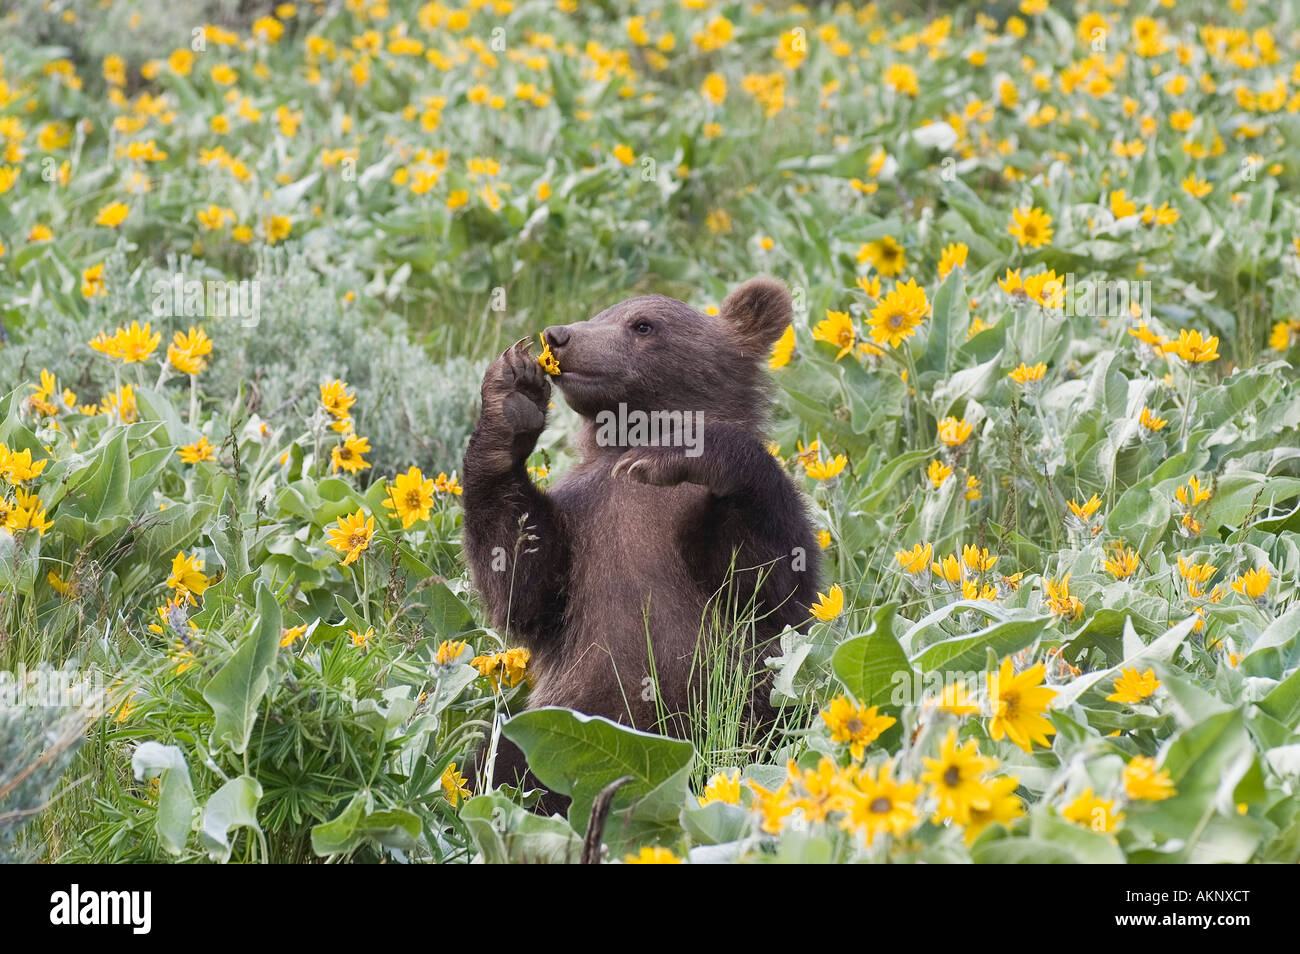 Grizzly Bear cub tenant une fleur jaune feuilles deltoïdes Arrowleaf jusqu'à son nez Banque D'Images